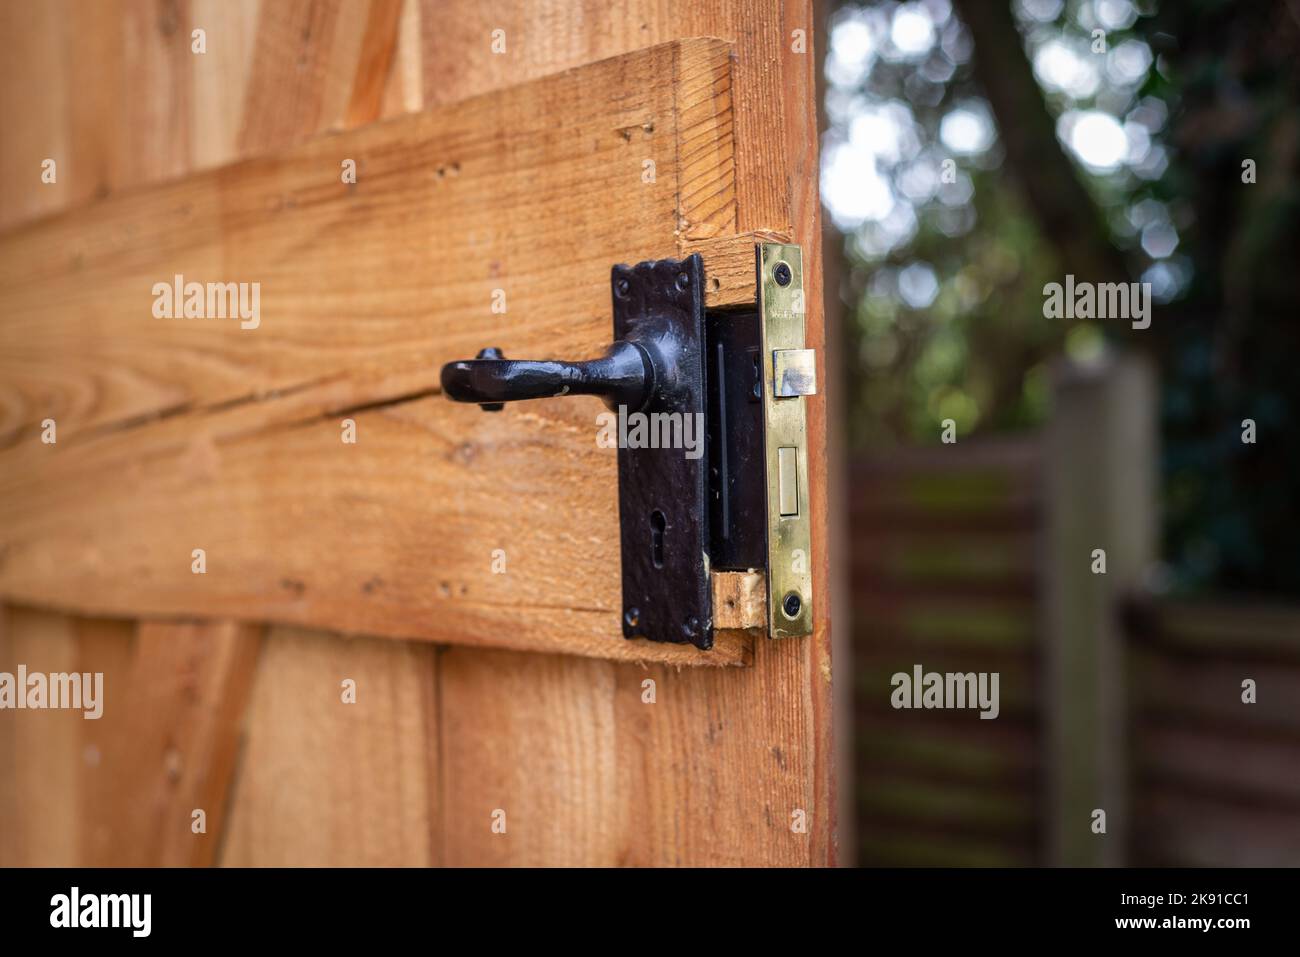 Gros plan de la poignée de porte en métal noir avec serrure encastrée sur une porte ouverte en bois dans un jardin résidentiel. Banque D'Images